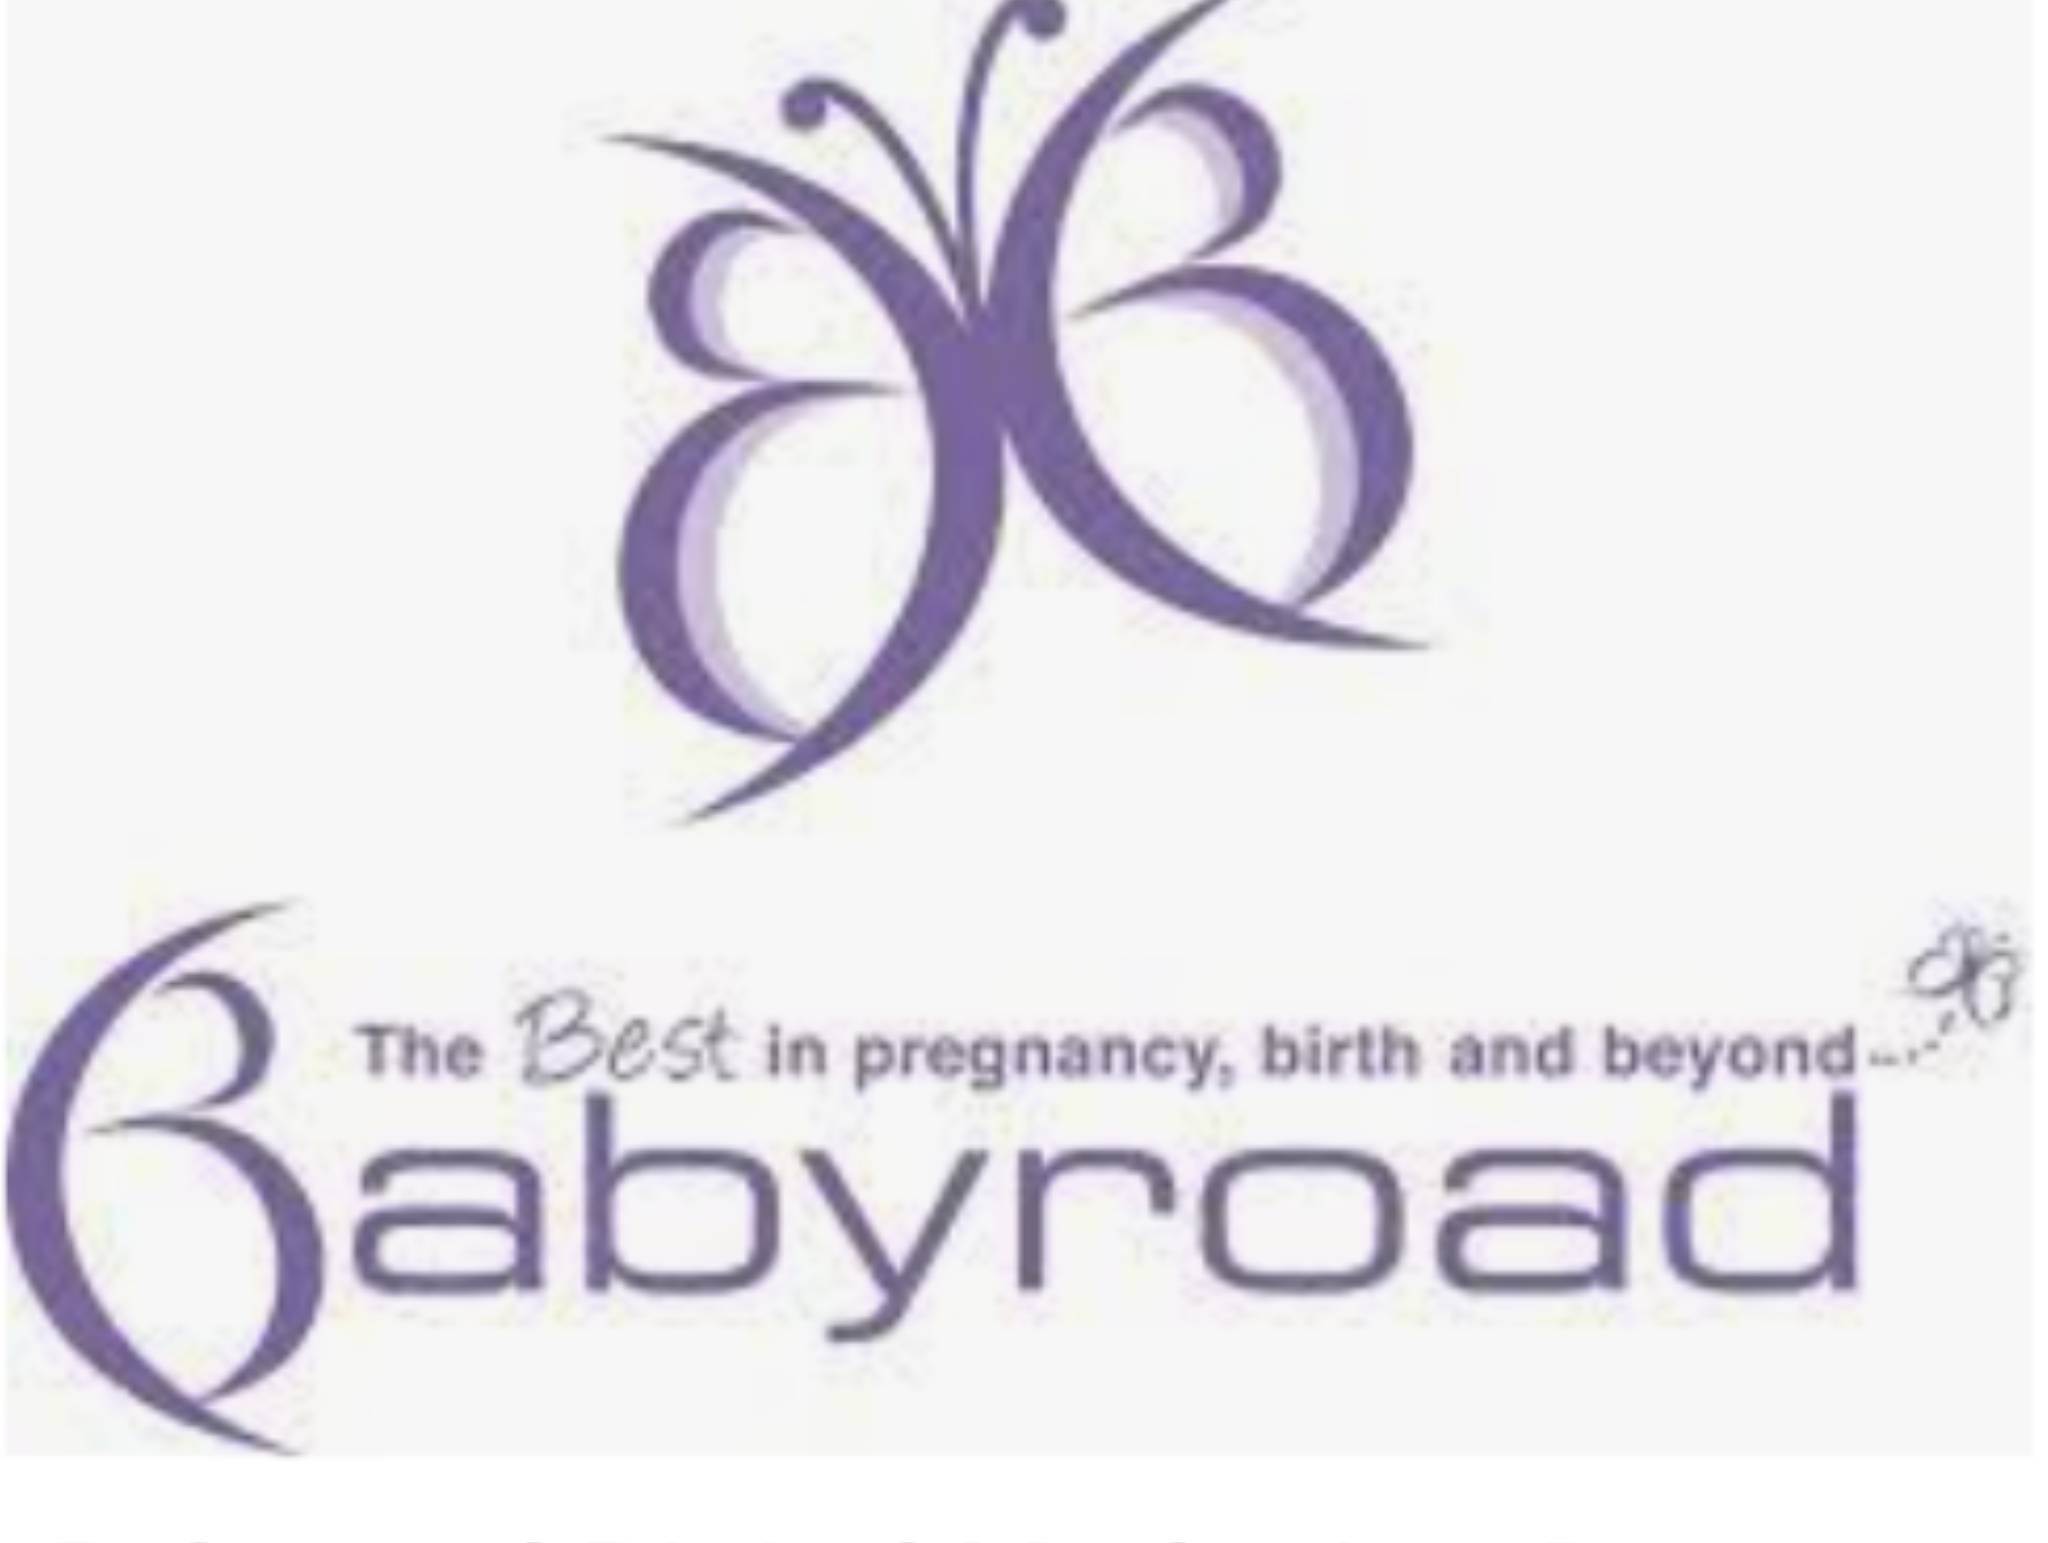 Baby Road gift voucher